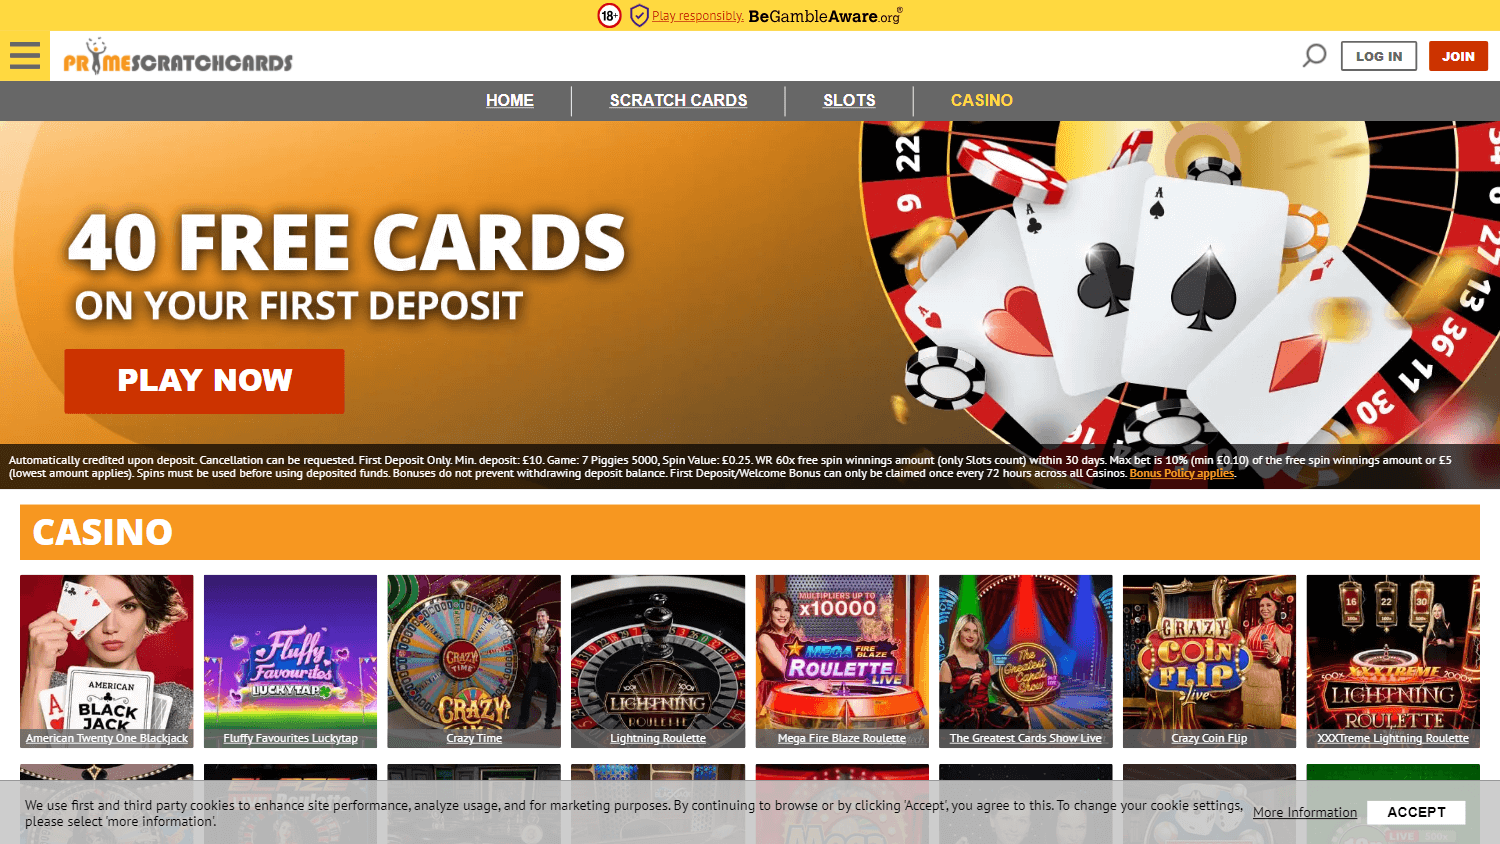 primescratchcards_casino_uk_game_gallery_desktop